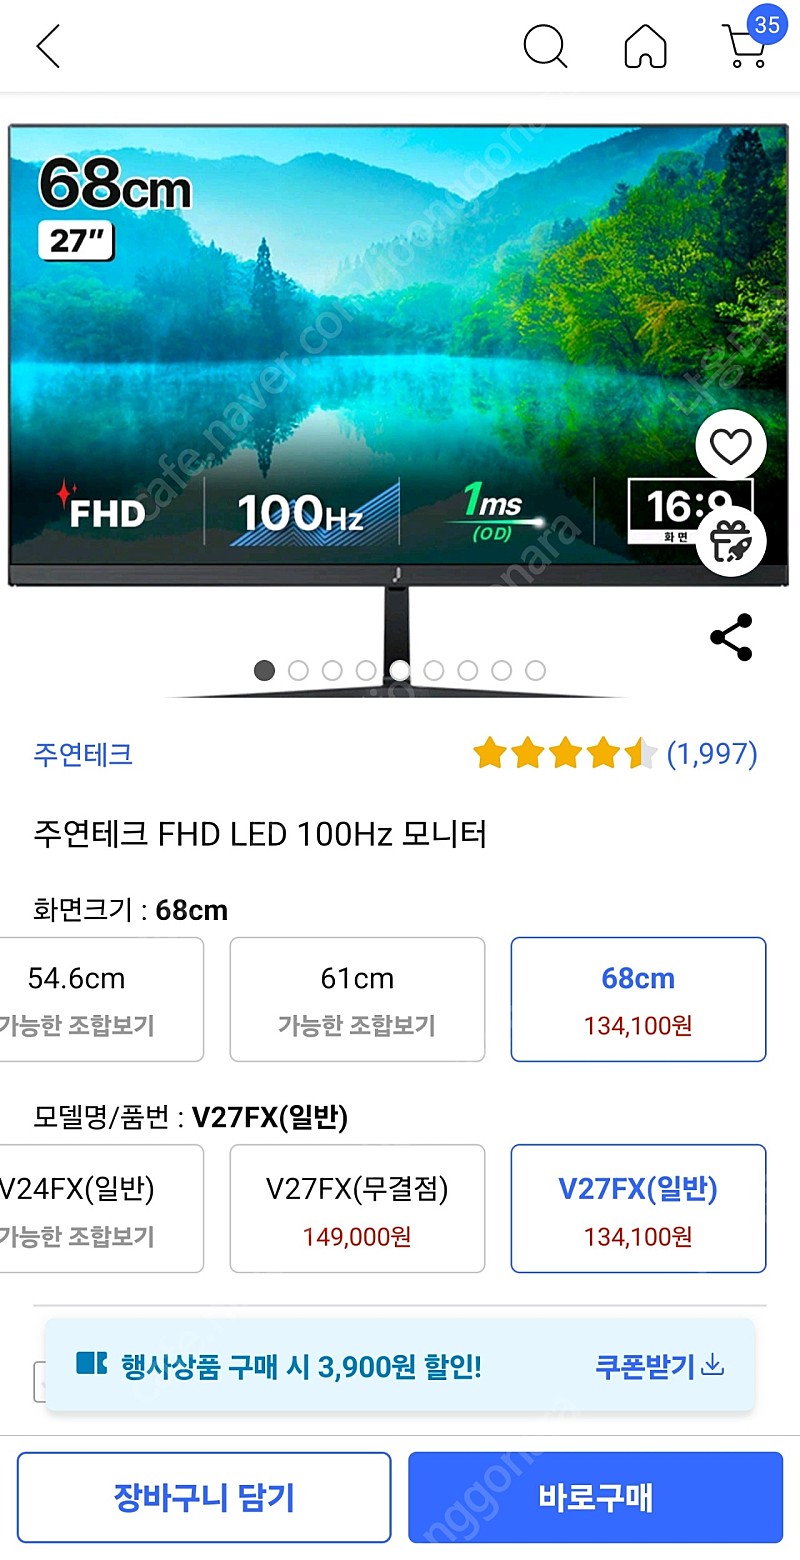 주연테크 FHD LED 100Hz 27인치 모니터 판매(4/15구입)